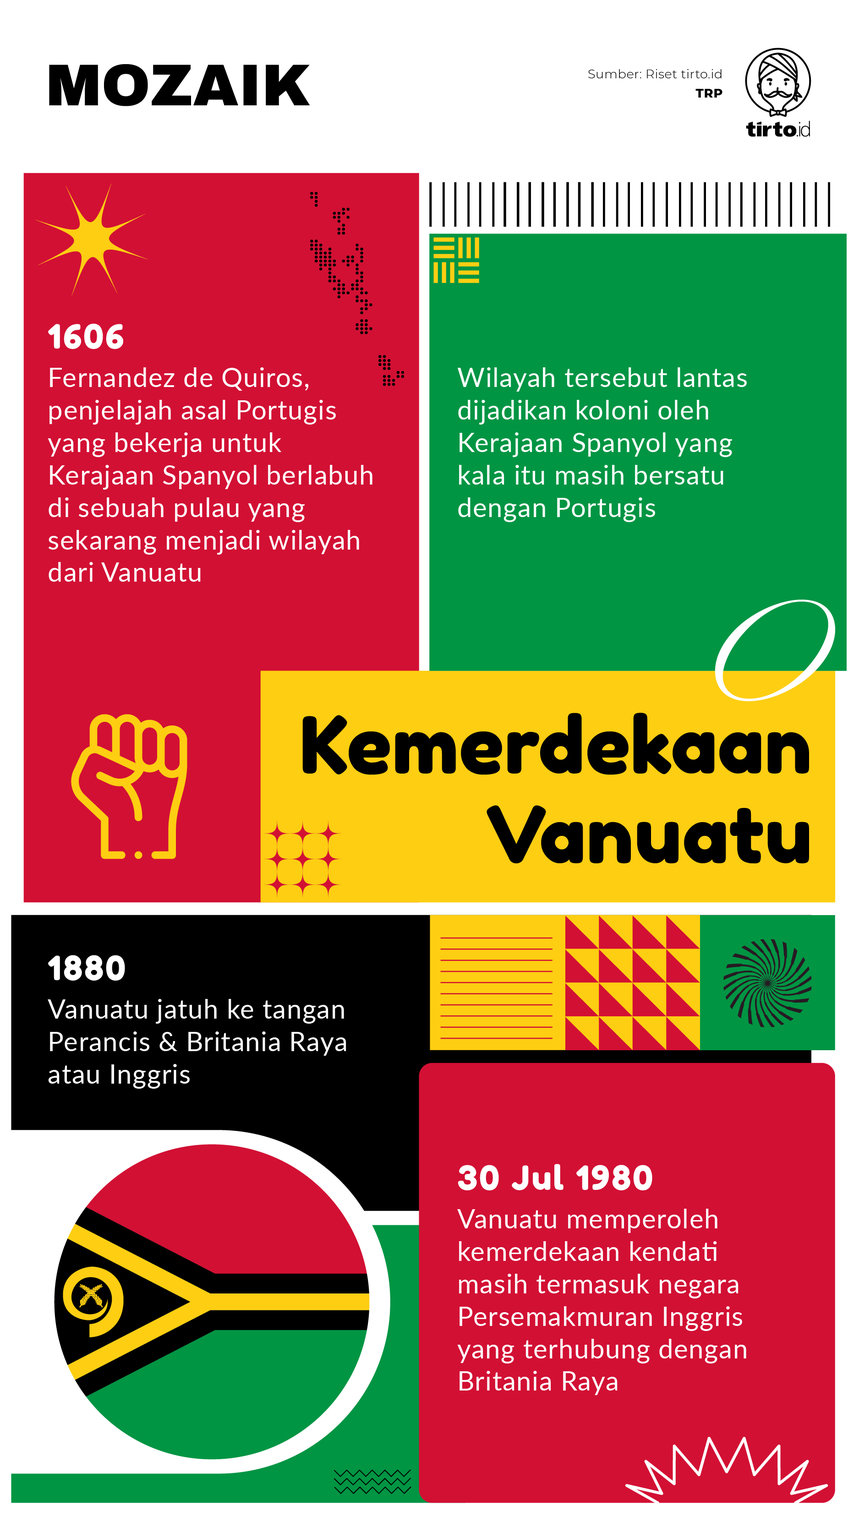 Infografik Mozaik Kemerdekaan Vanuatu